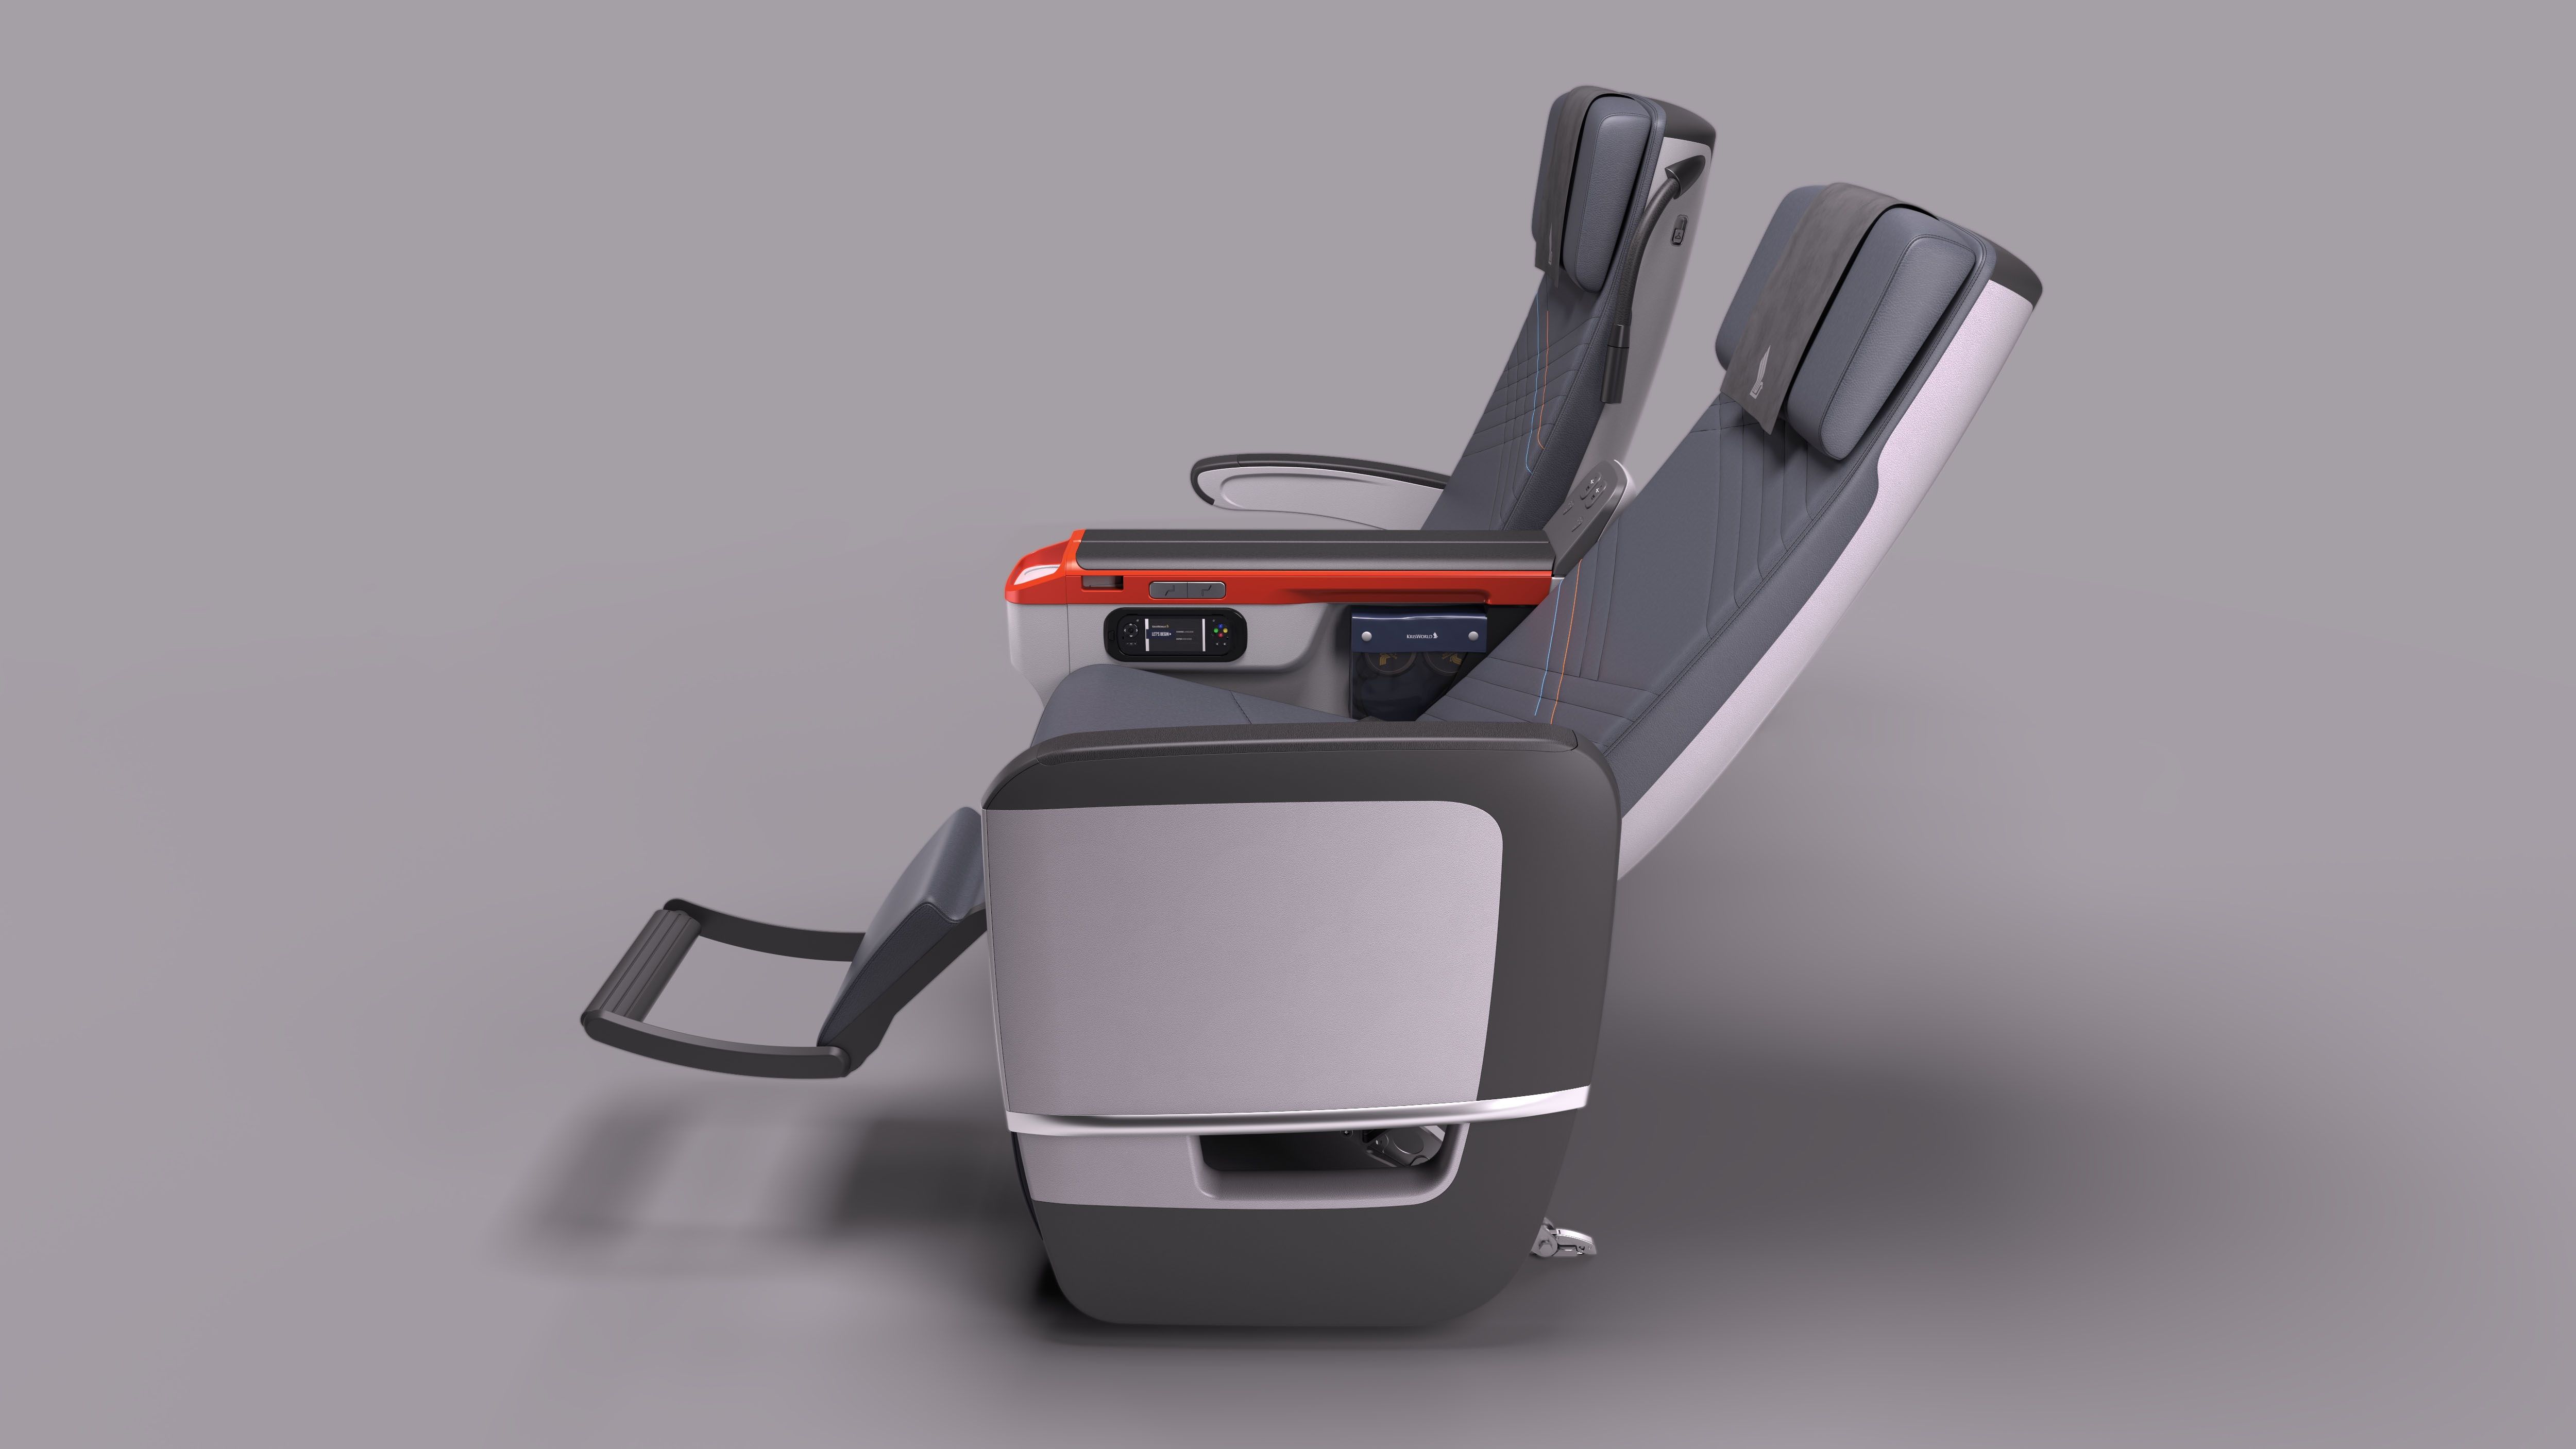 Singapore Airlines premium economy seats